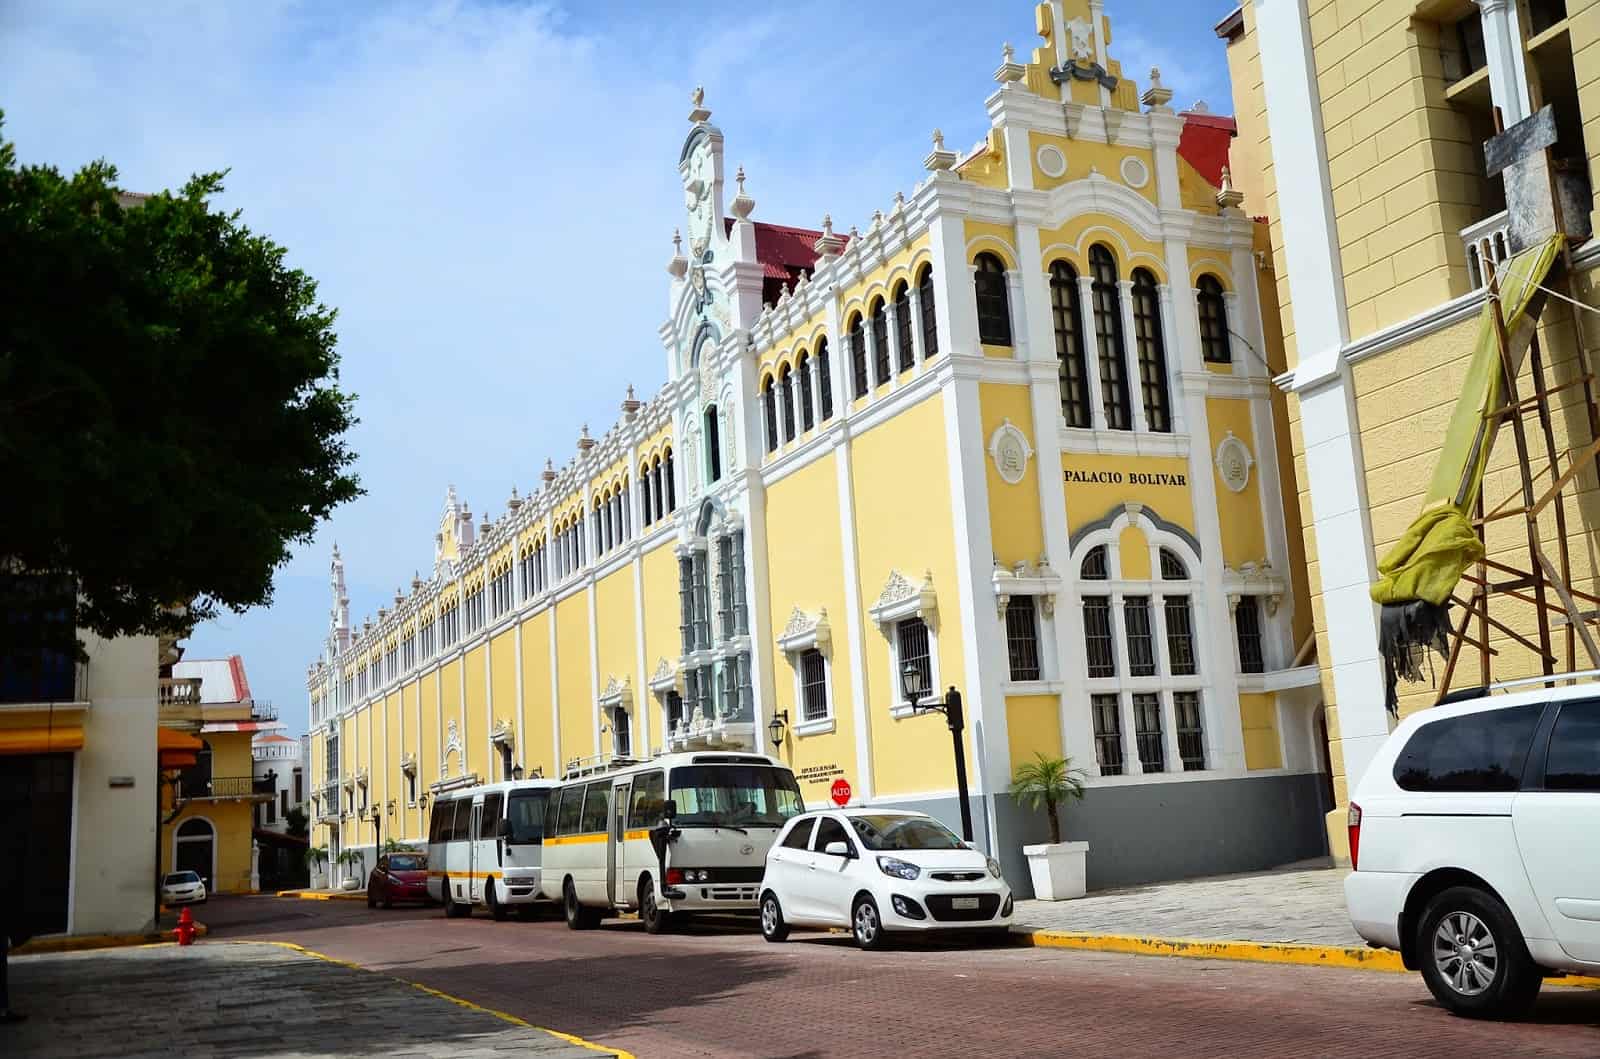 Bolívar Palace on Plaza Bolívar in Casco Viejo, Panama City